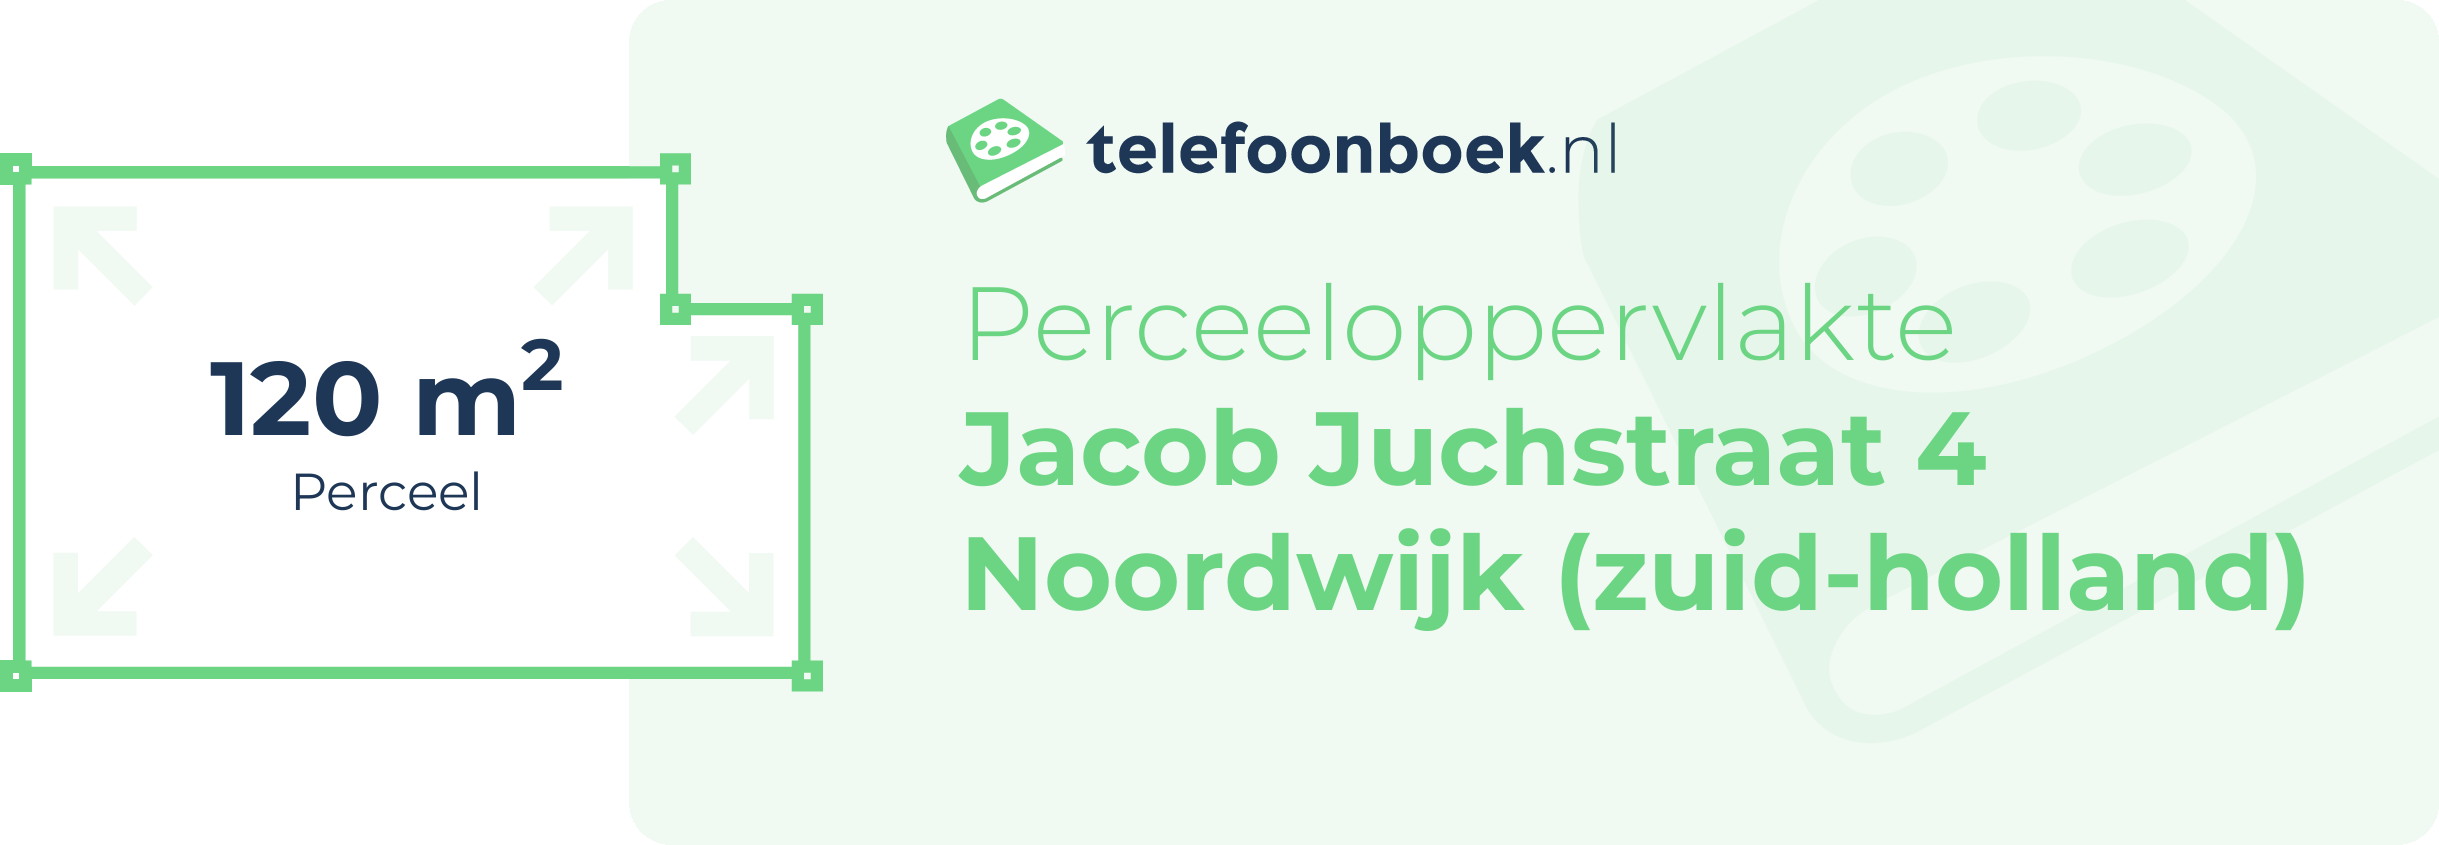 Perceeloppervlakte Jacob Juchstraat 4 Noordwijk (Zuid-Holland)